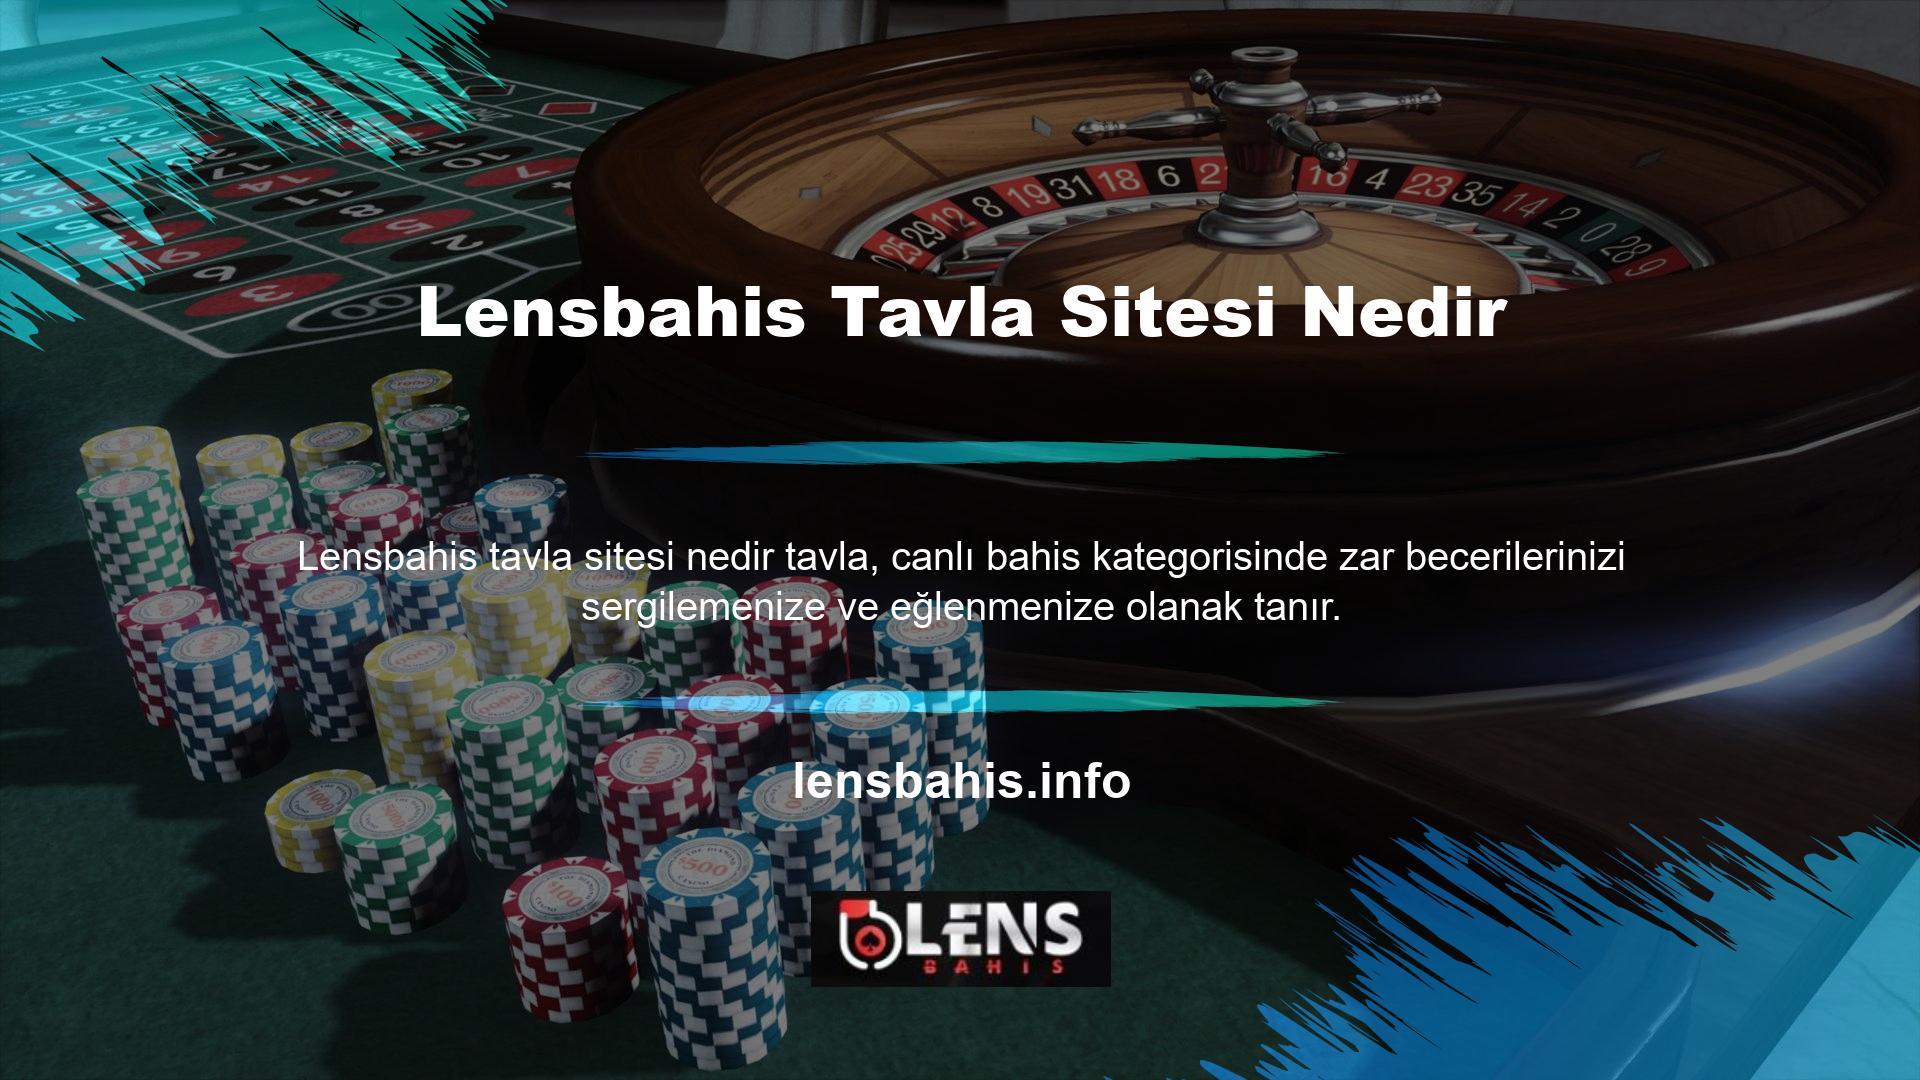 Tavla Lensbahis online bahis sitesi üye olmak isteyen müşterilere yönelik olup bilinen tüm bahis ve canlı oyun türlerini sunmaktadır